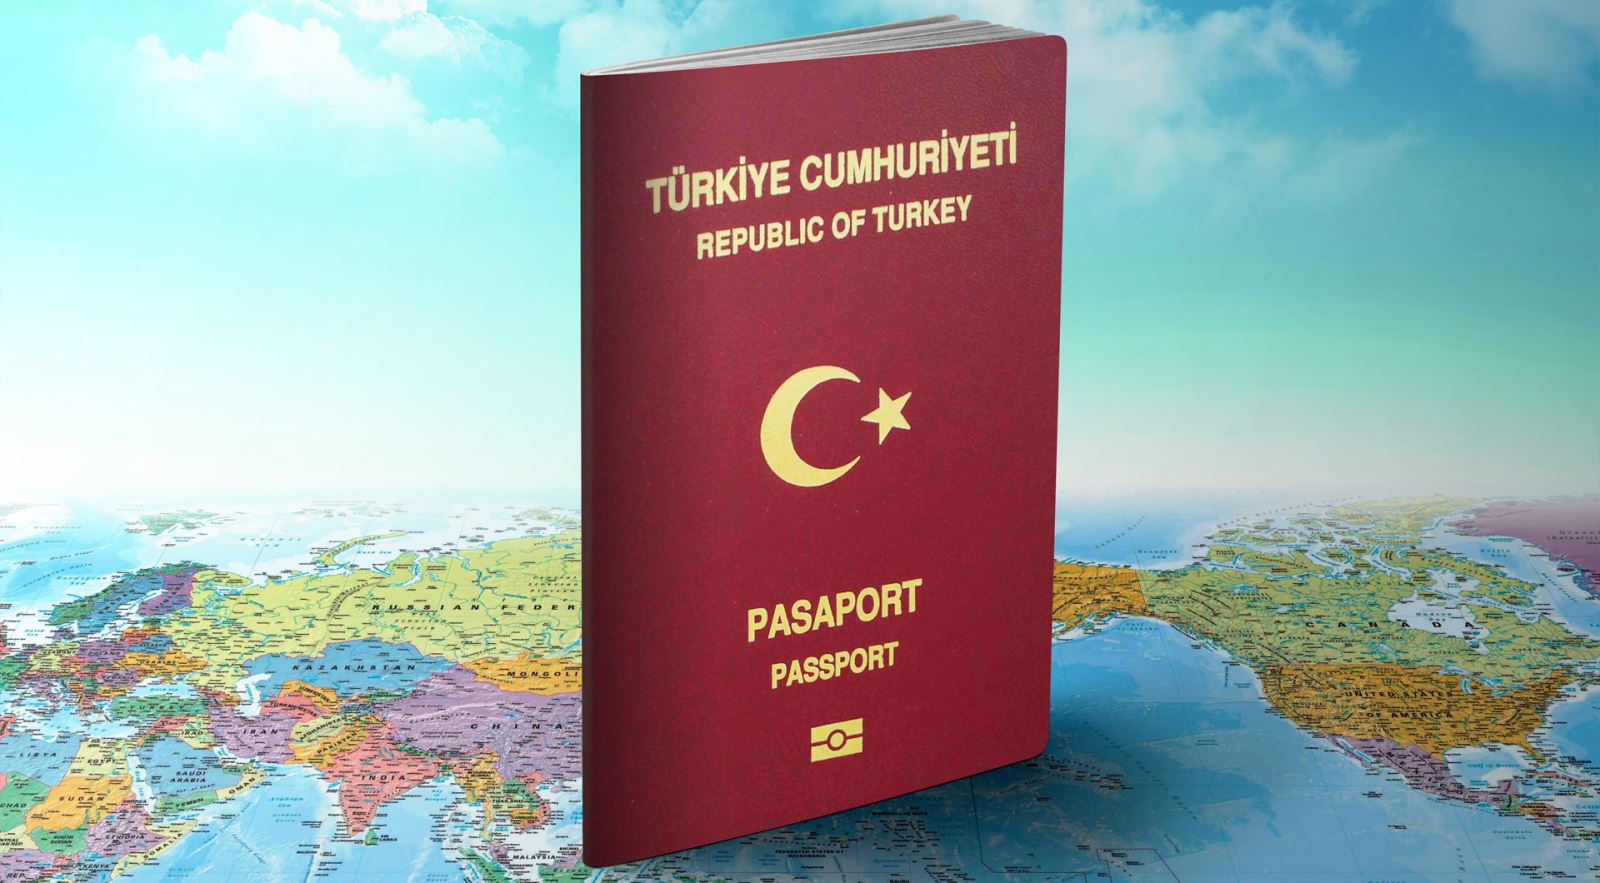 برنامج الجنسية التركية ” الاستثمار العقاري “